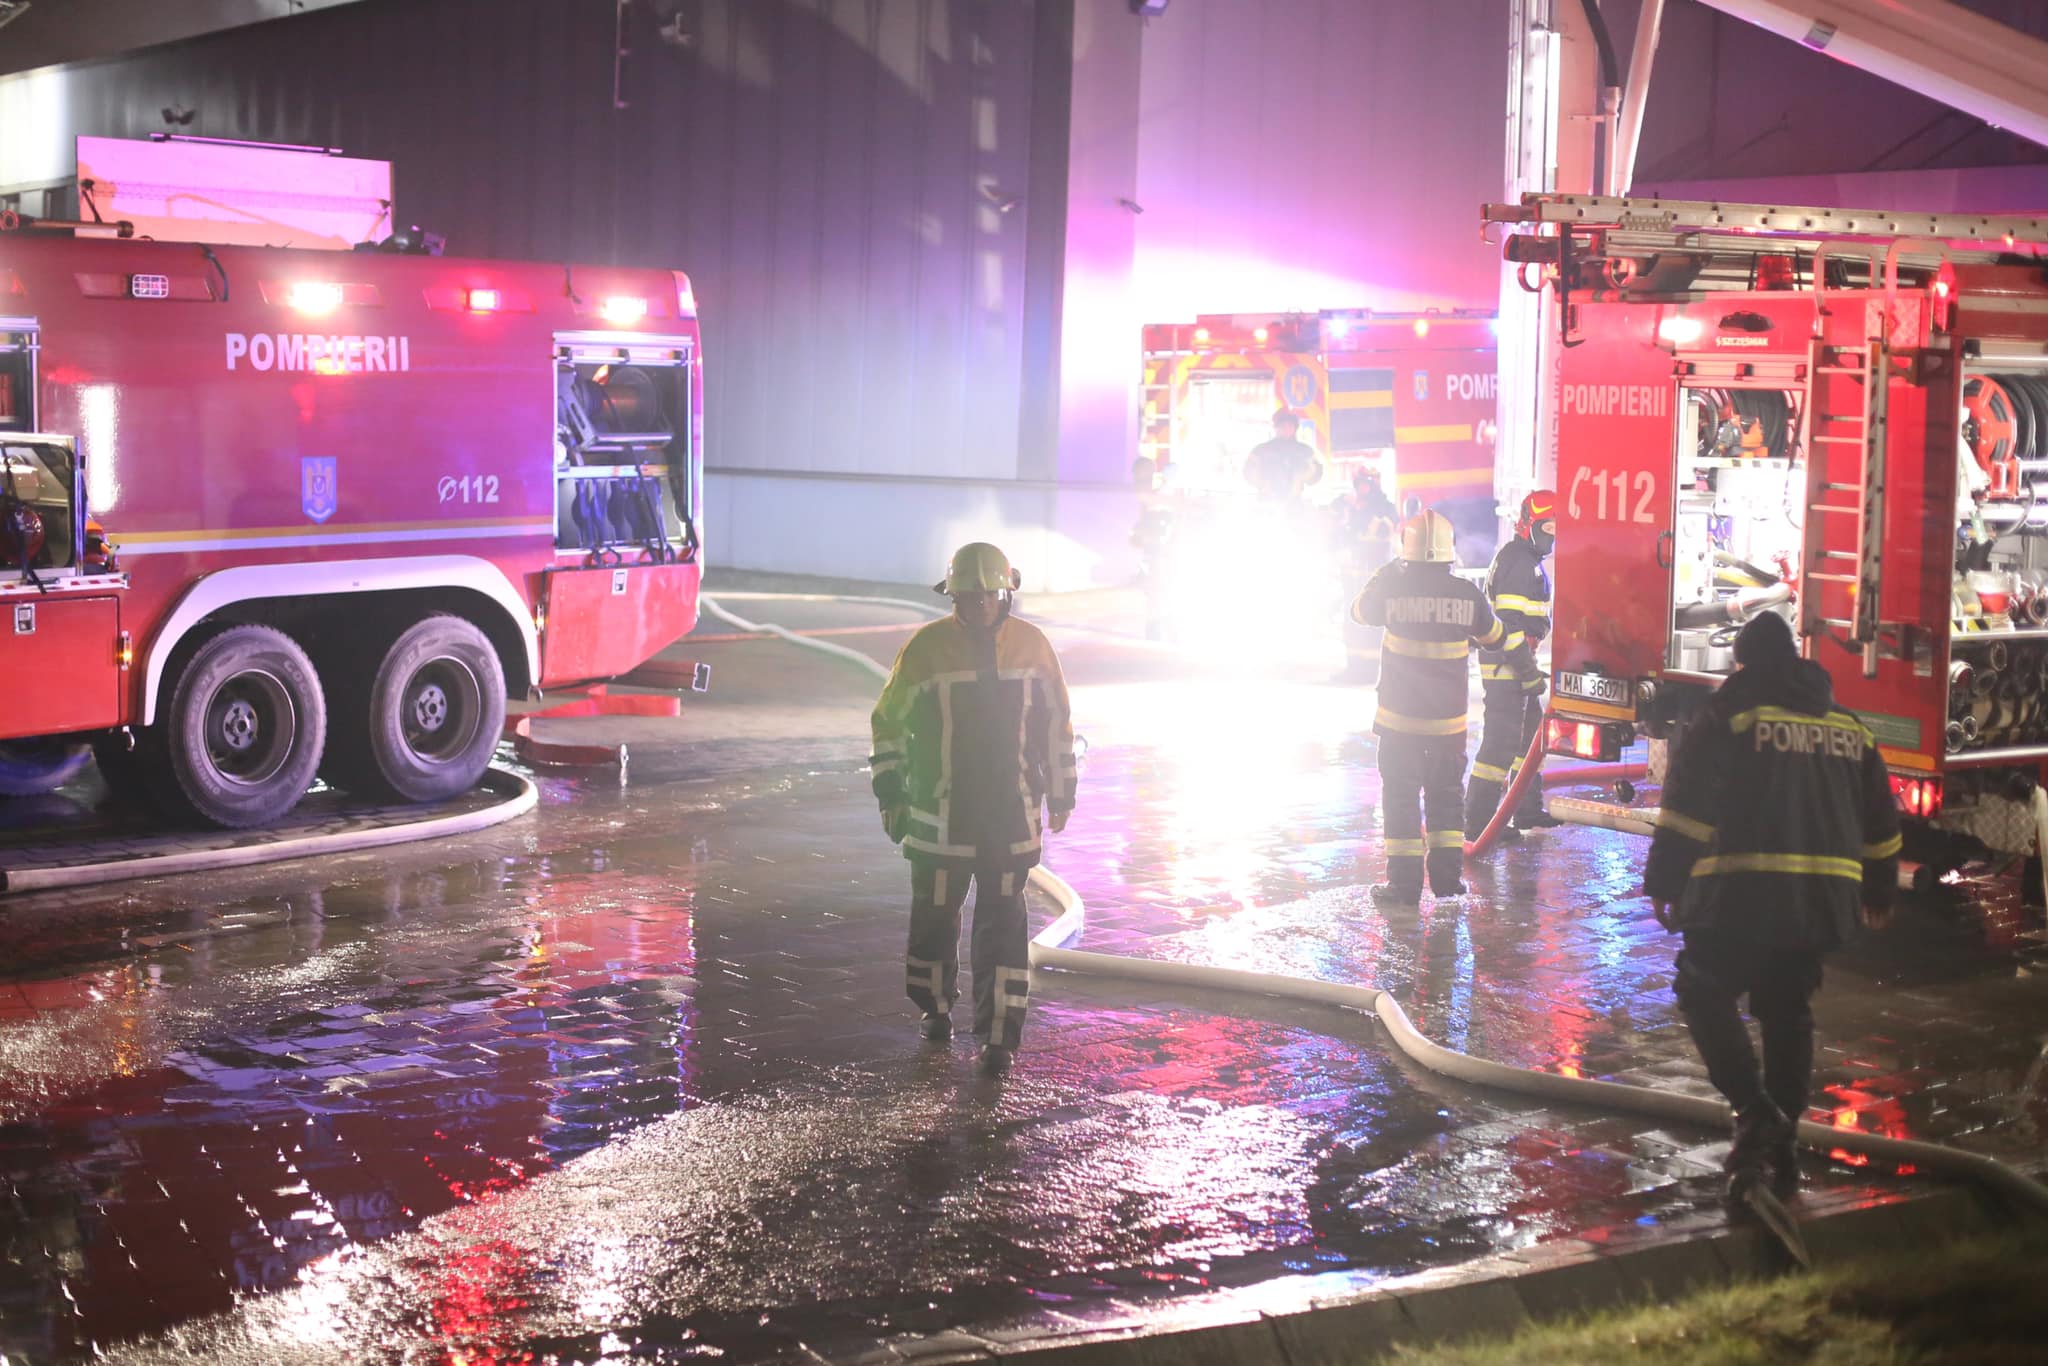 ALERTĂ la Spitalul de Psihiatrie din Cluj. Pompierii au intervenit după ce un pacient a pornit un foc. FOTO: Arhivă ISU Cluj